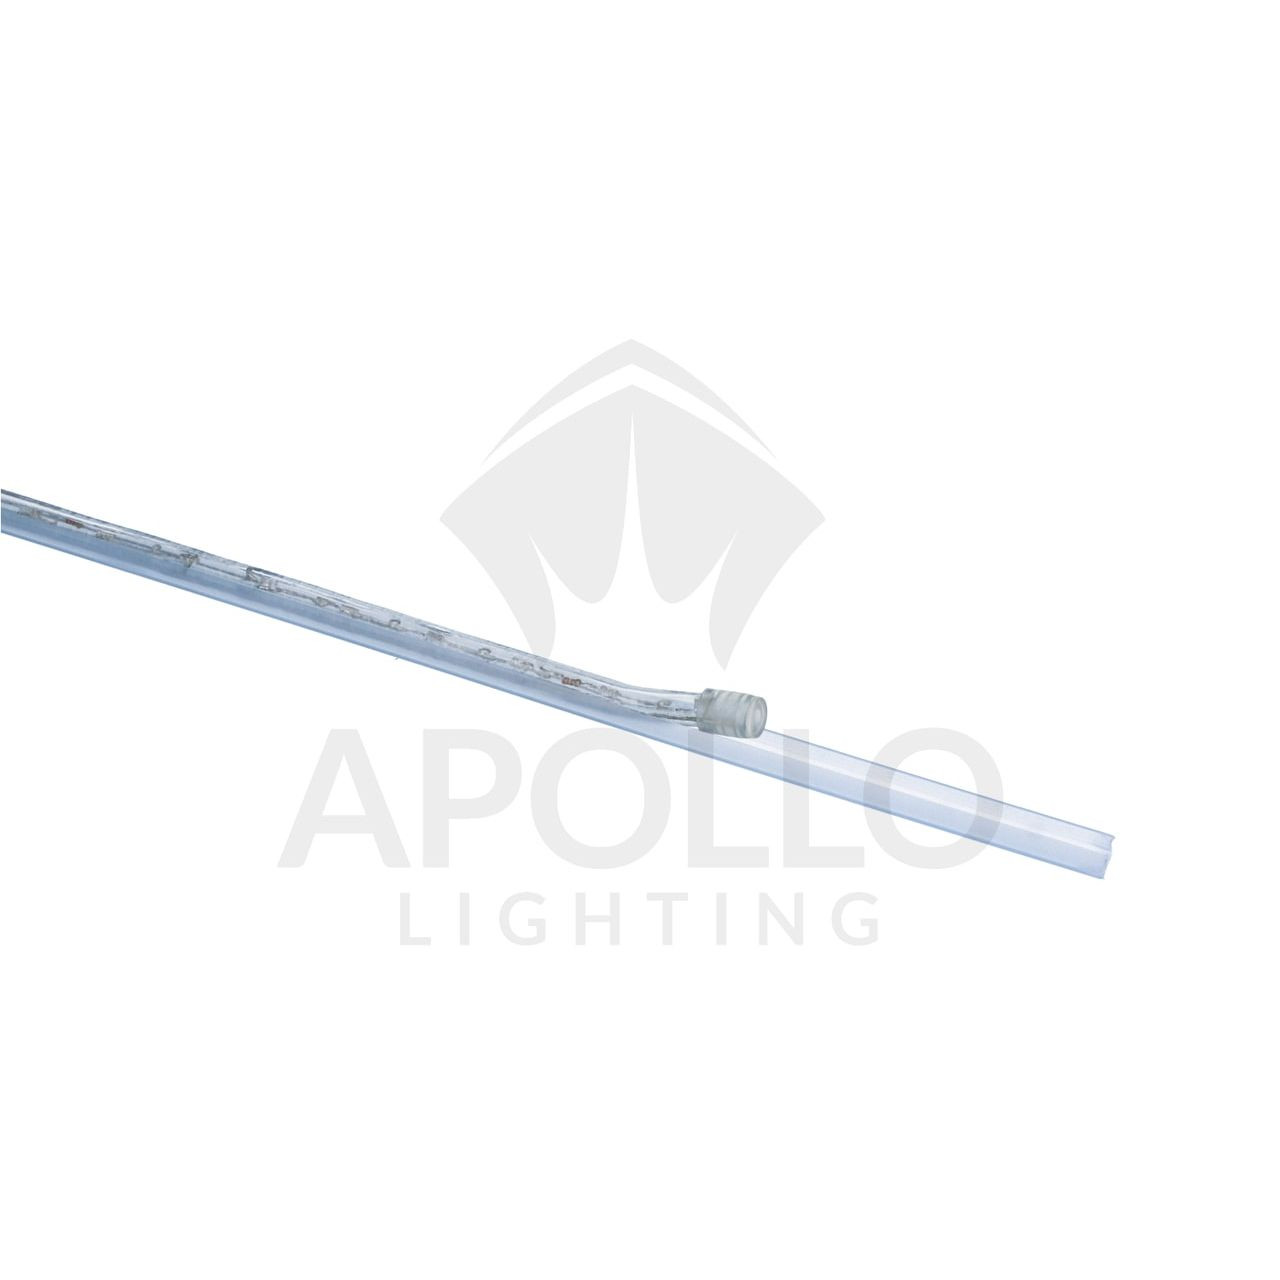 Apollo - 3/8 LED Rope Light - 2W - Apollo Lighting